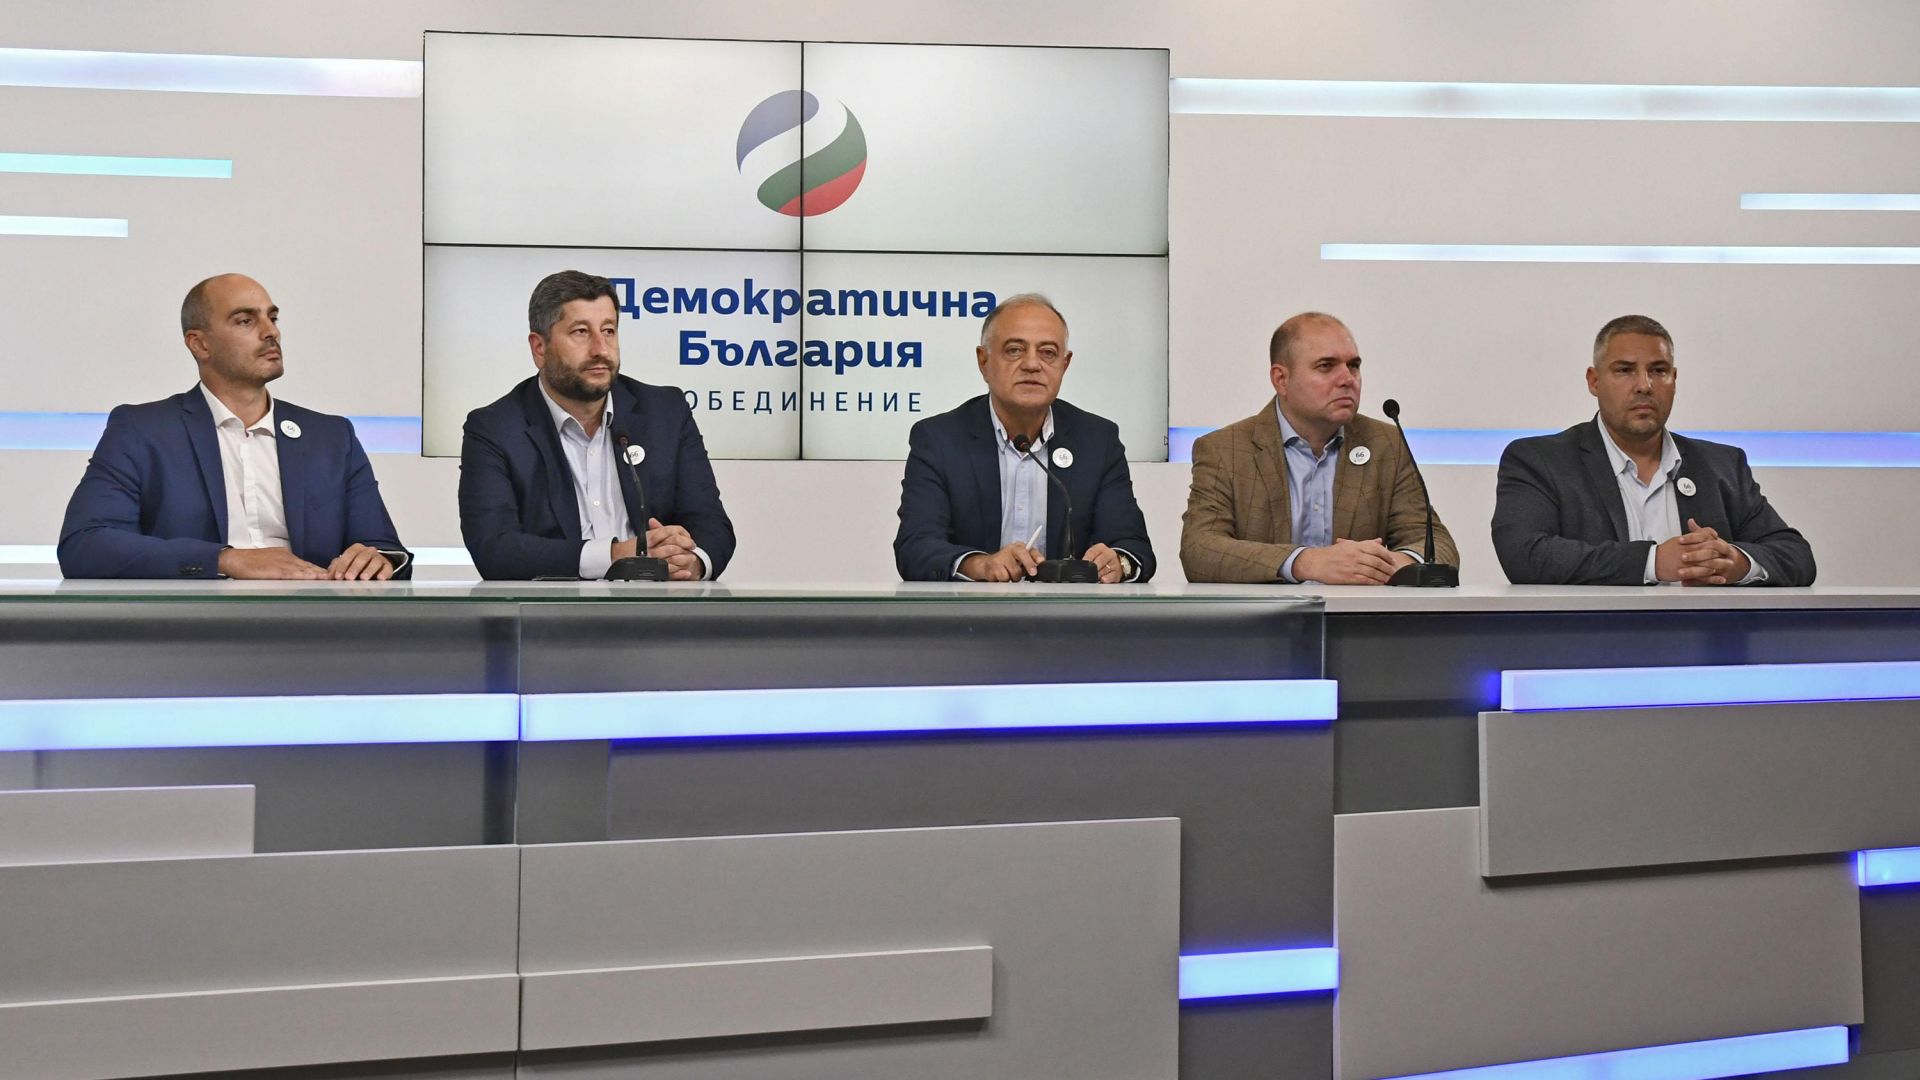 Демократична България предлага на "Спаси София" обща група в Общинския съвет (видео)